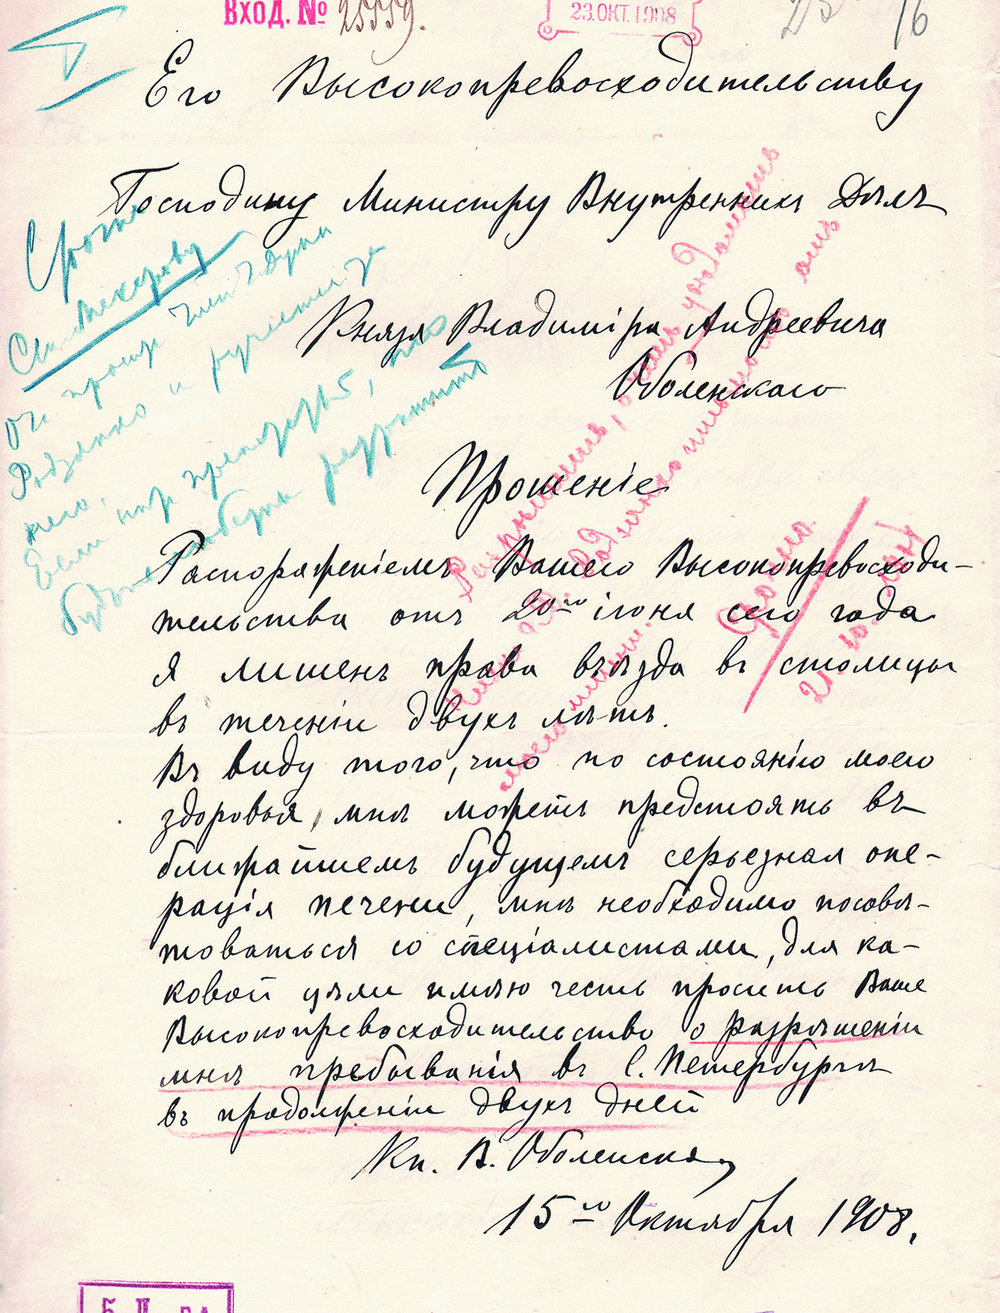 Прошение князя Владимира Оболенского министру внутренних дел. 15 октября 1908 года.